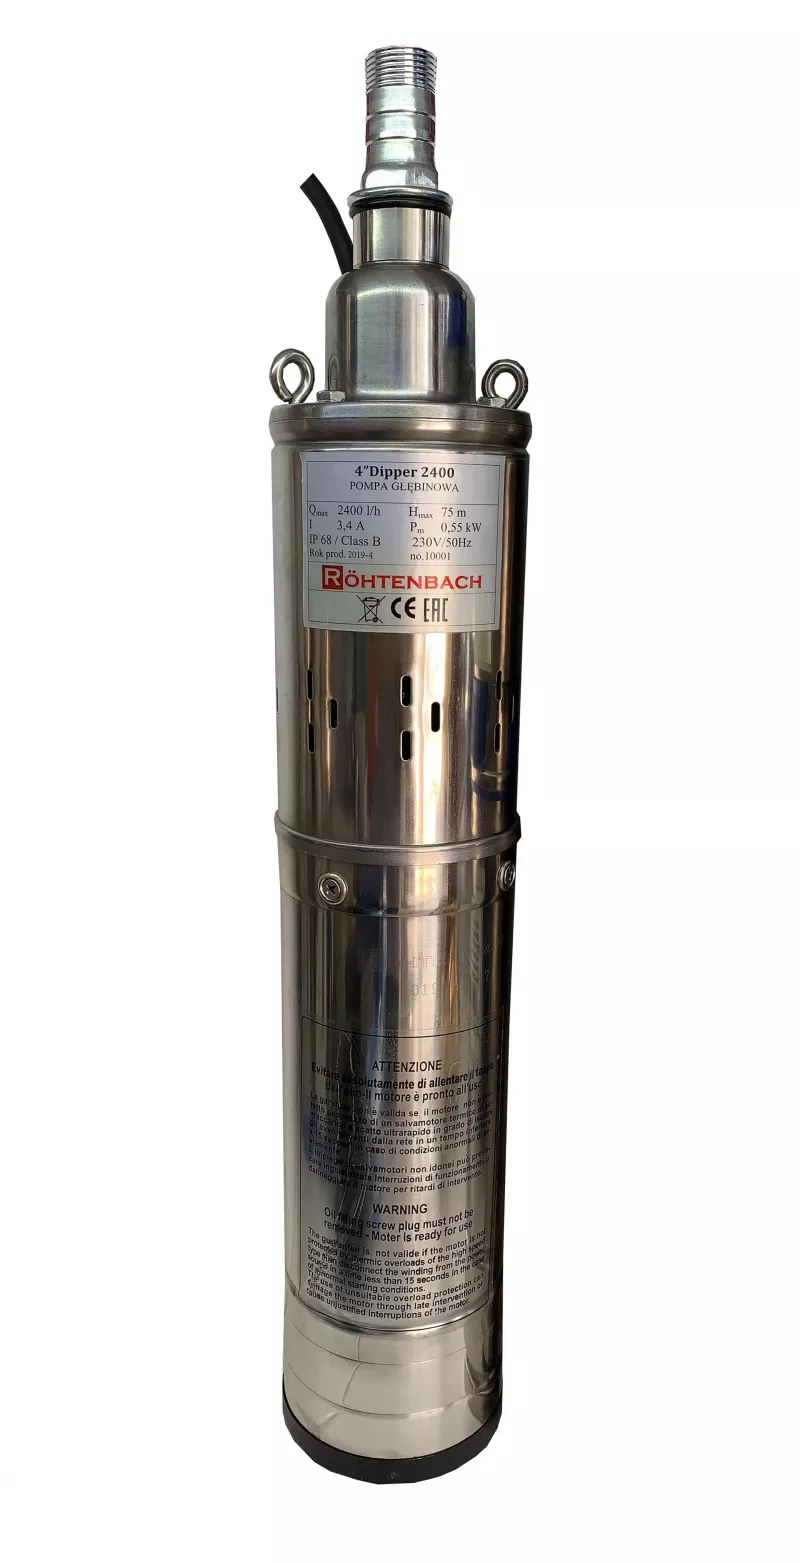 Pompă Submersibilă QGD Rohtenbach Dipper 2400, [],einstal.ro